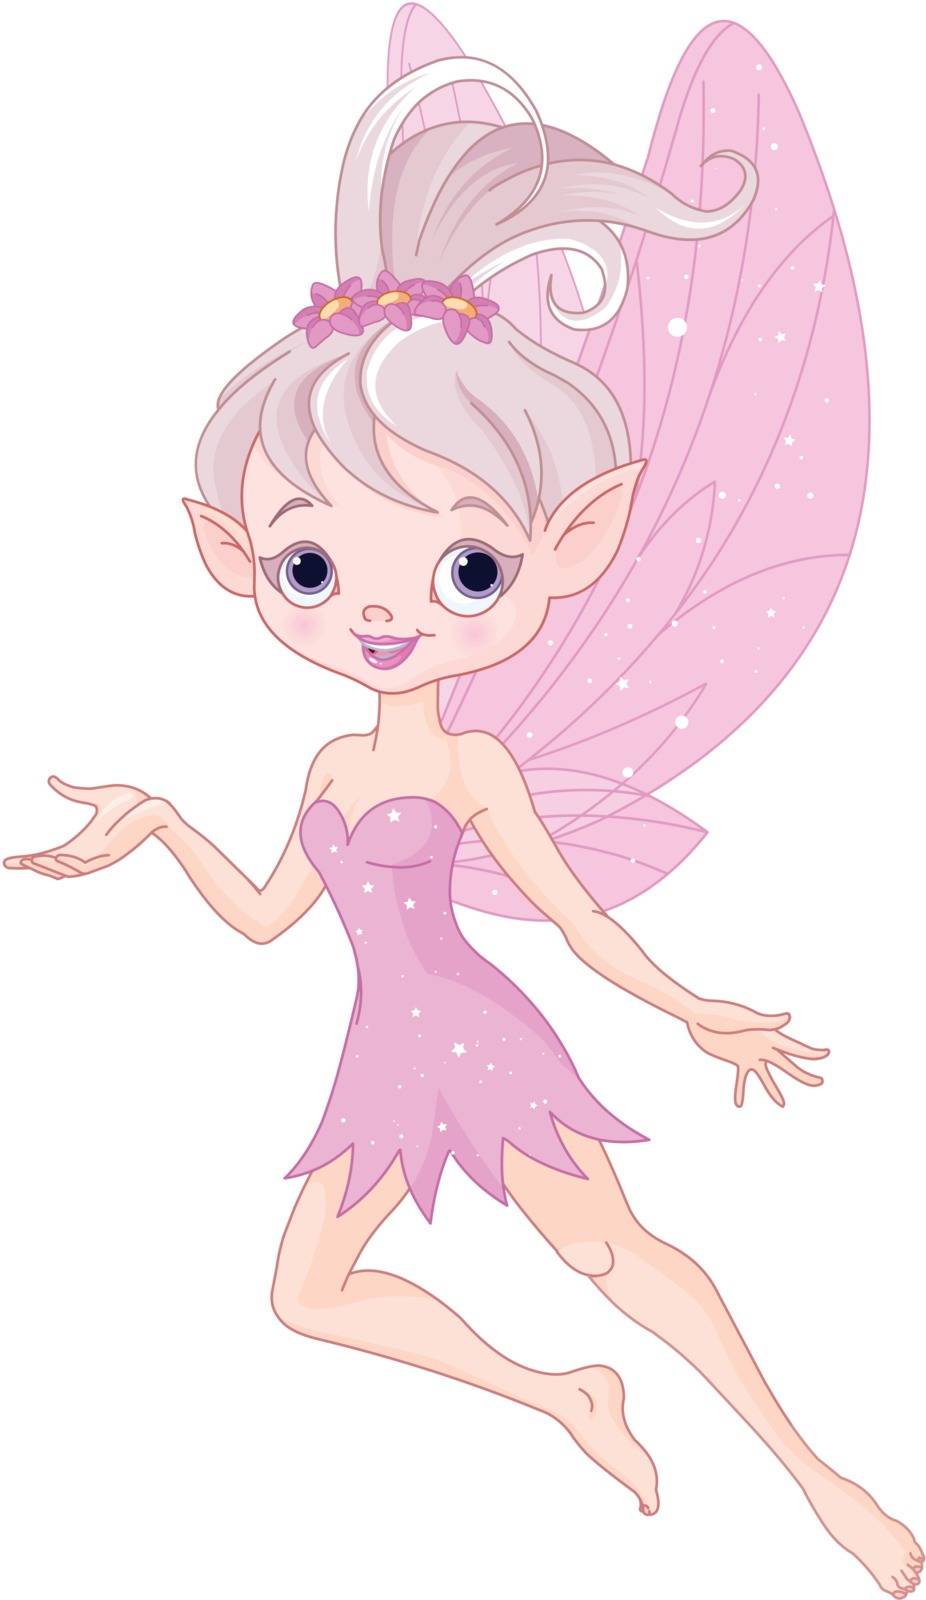 Beautiful pixie fairy by Dazdraperma